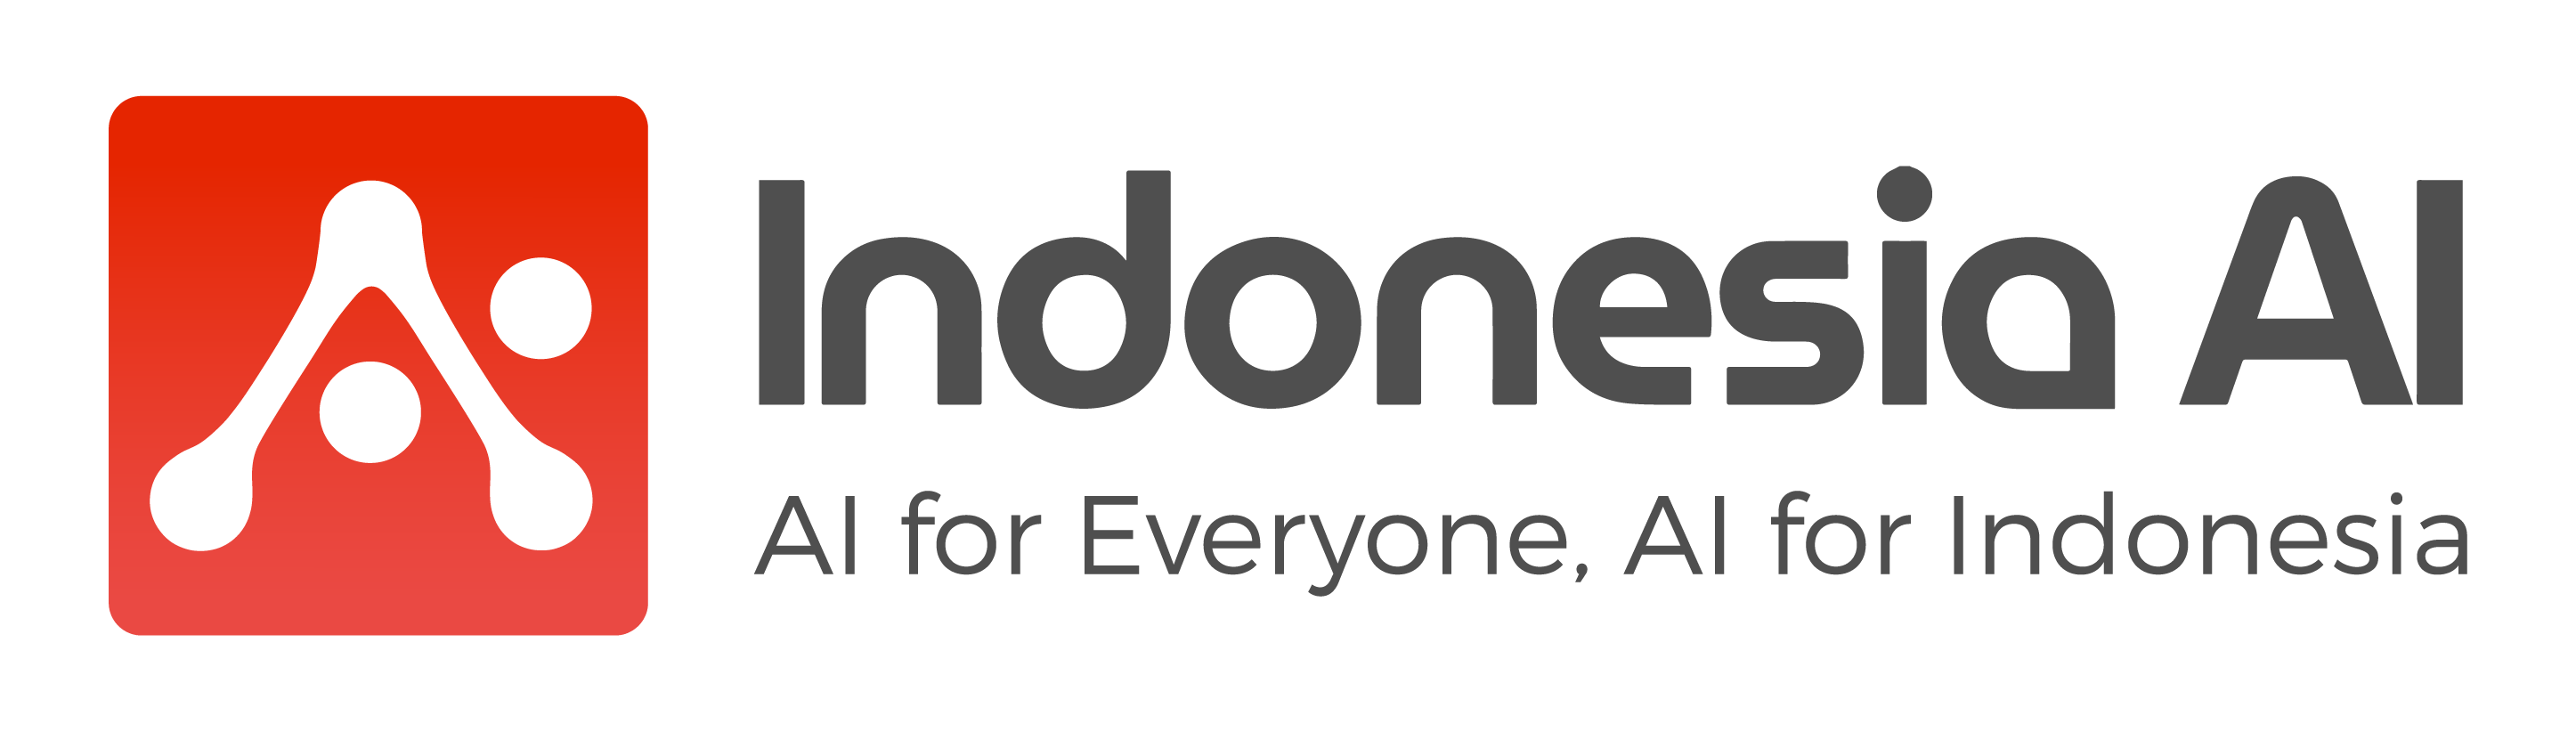 Indonesia AI, AI di Indonesia - Logo Indonesia AI